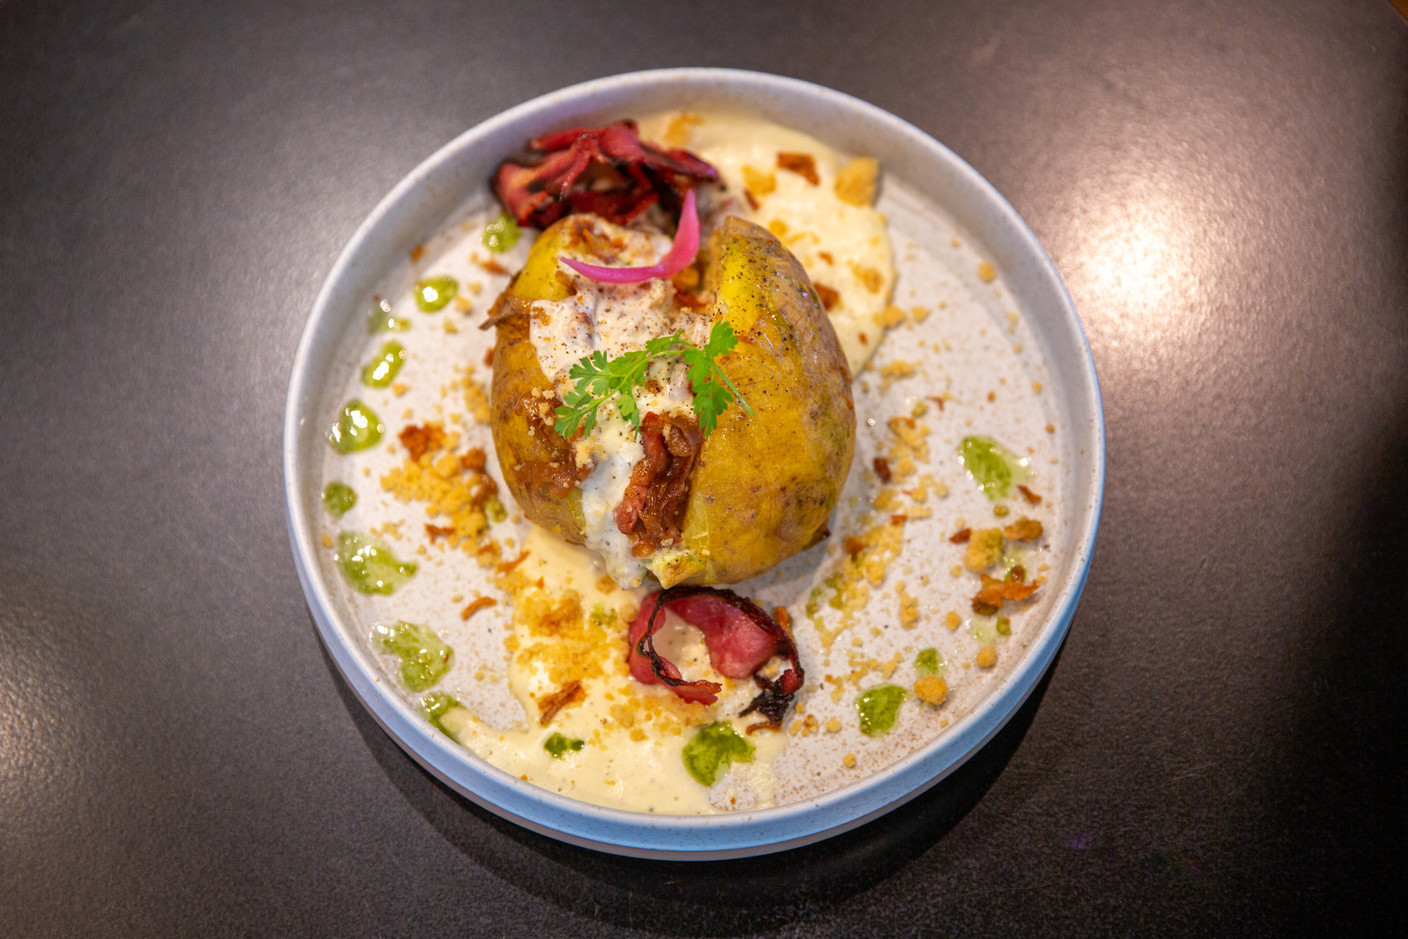 La pomme de terre se décline en version savoyarde avec un siphon de reblochon, des oignons caramélisés et du jambon croustillant. (Photo: Romain Gamba/Maison Moderne)